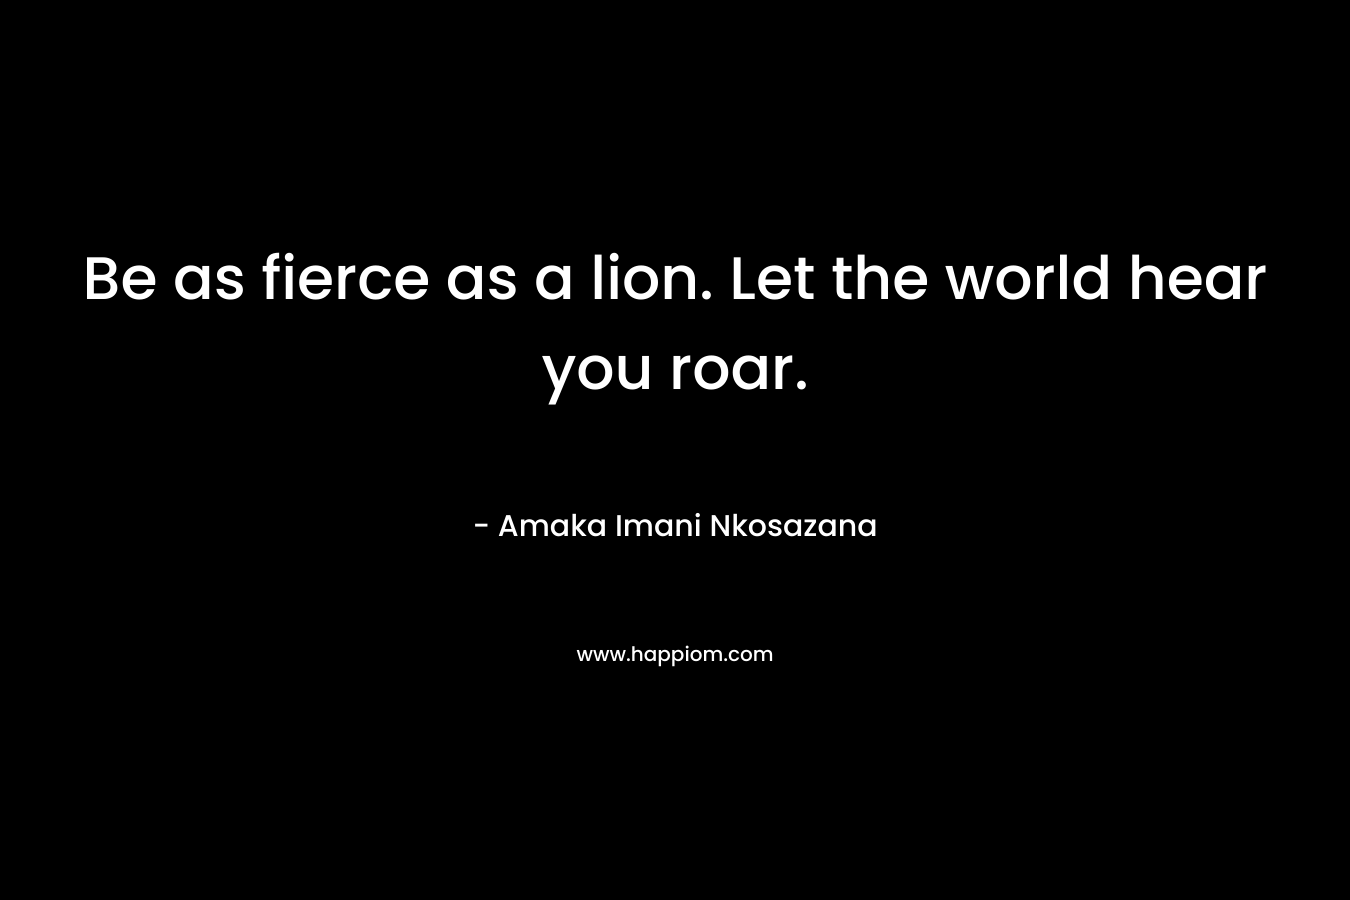 Be as fierce as a lion. Let the world hear you roar.